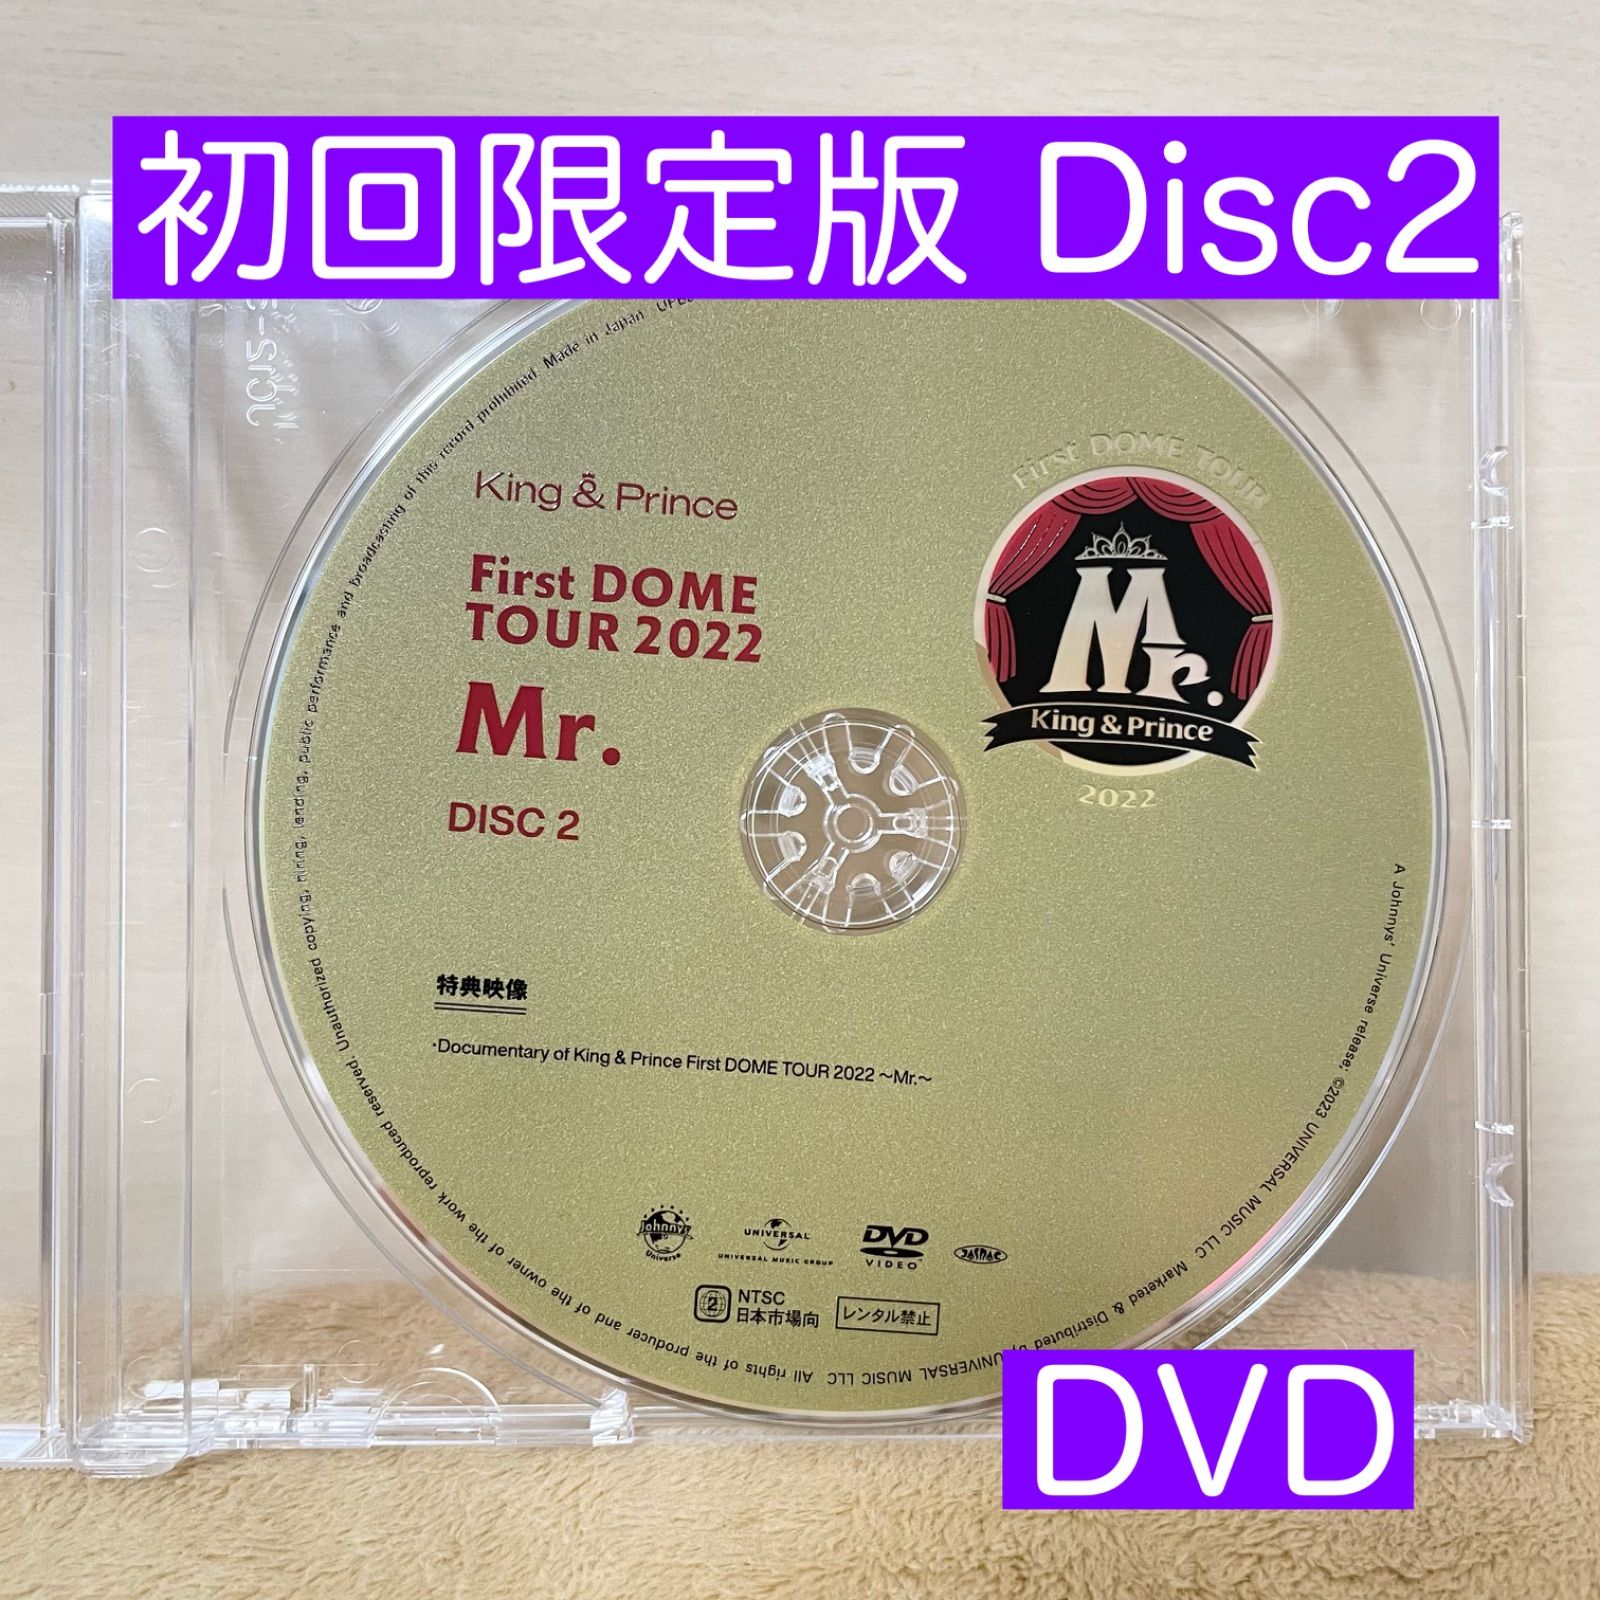 キンプリ 初回限定盤DVD Disc2のみ - メルカリ